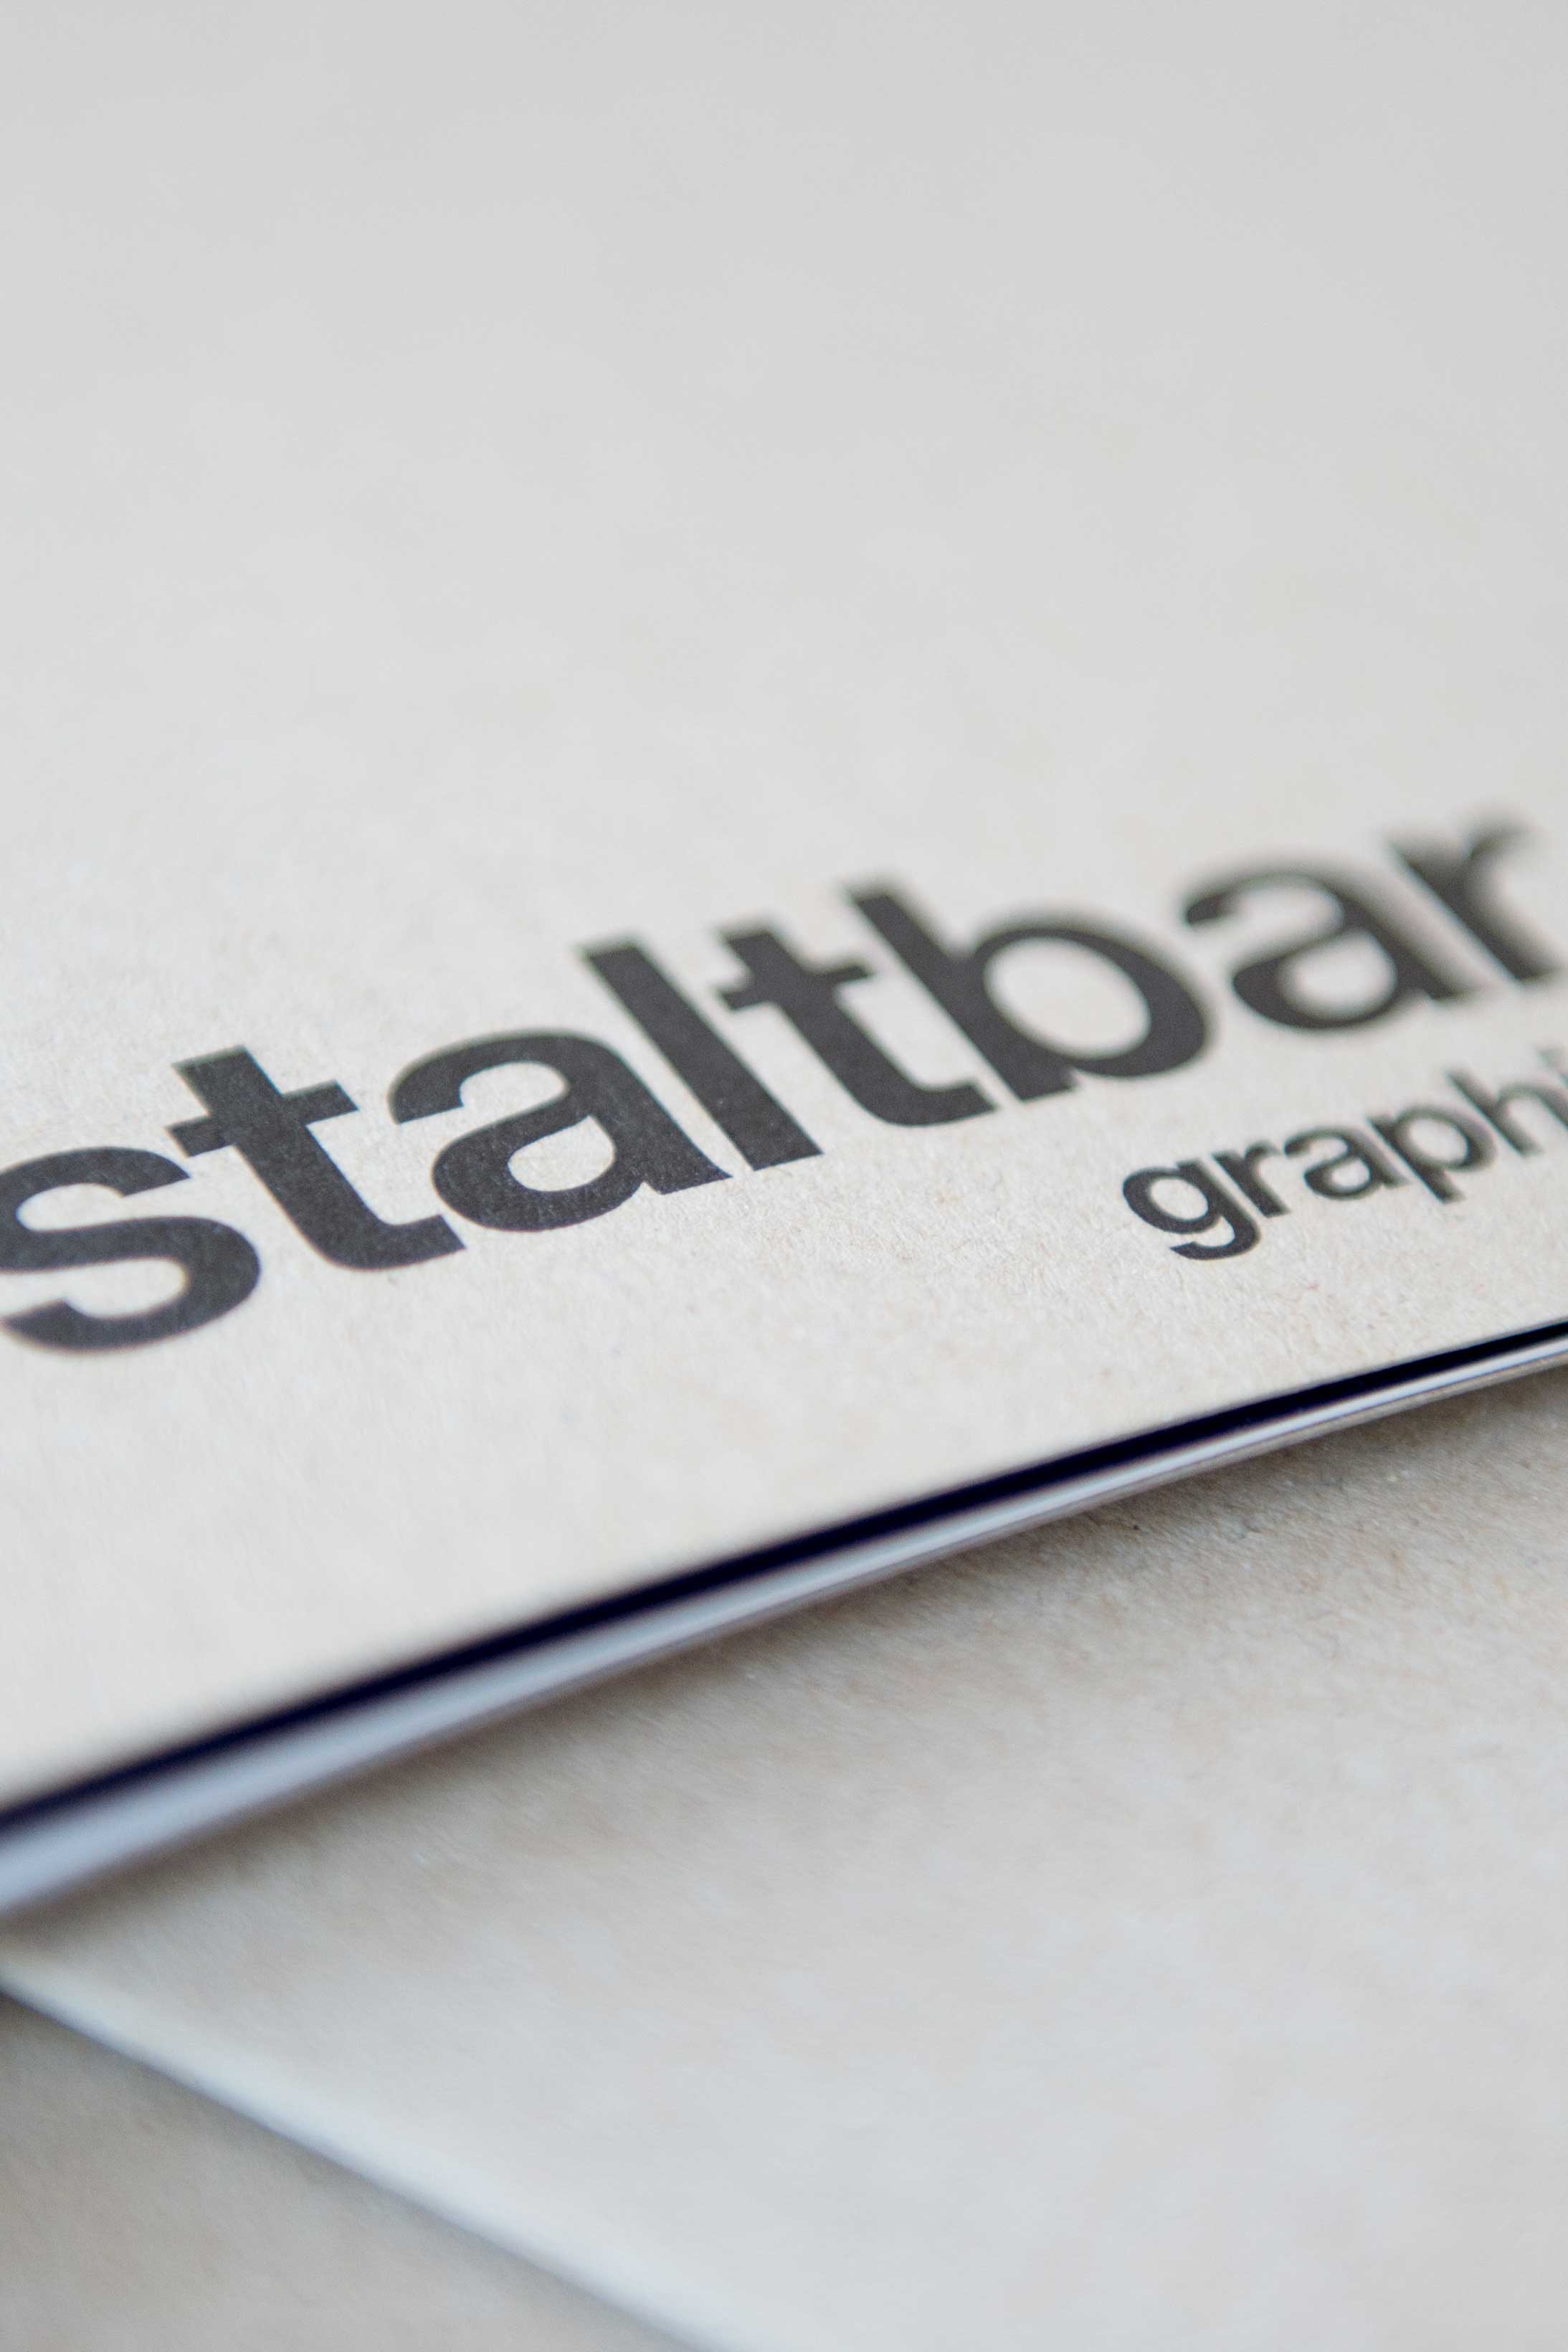 Gestaltbar Meilen - Grafikdesign Webdesign Branding